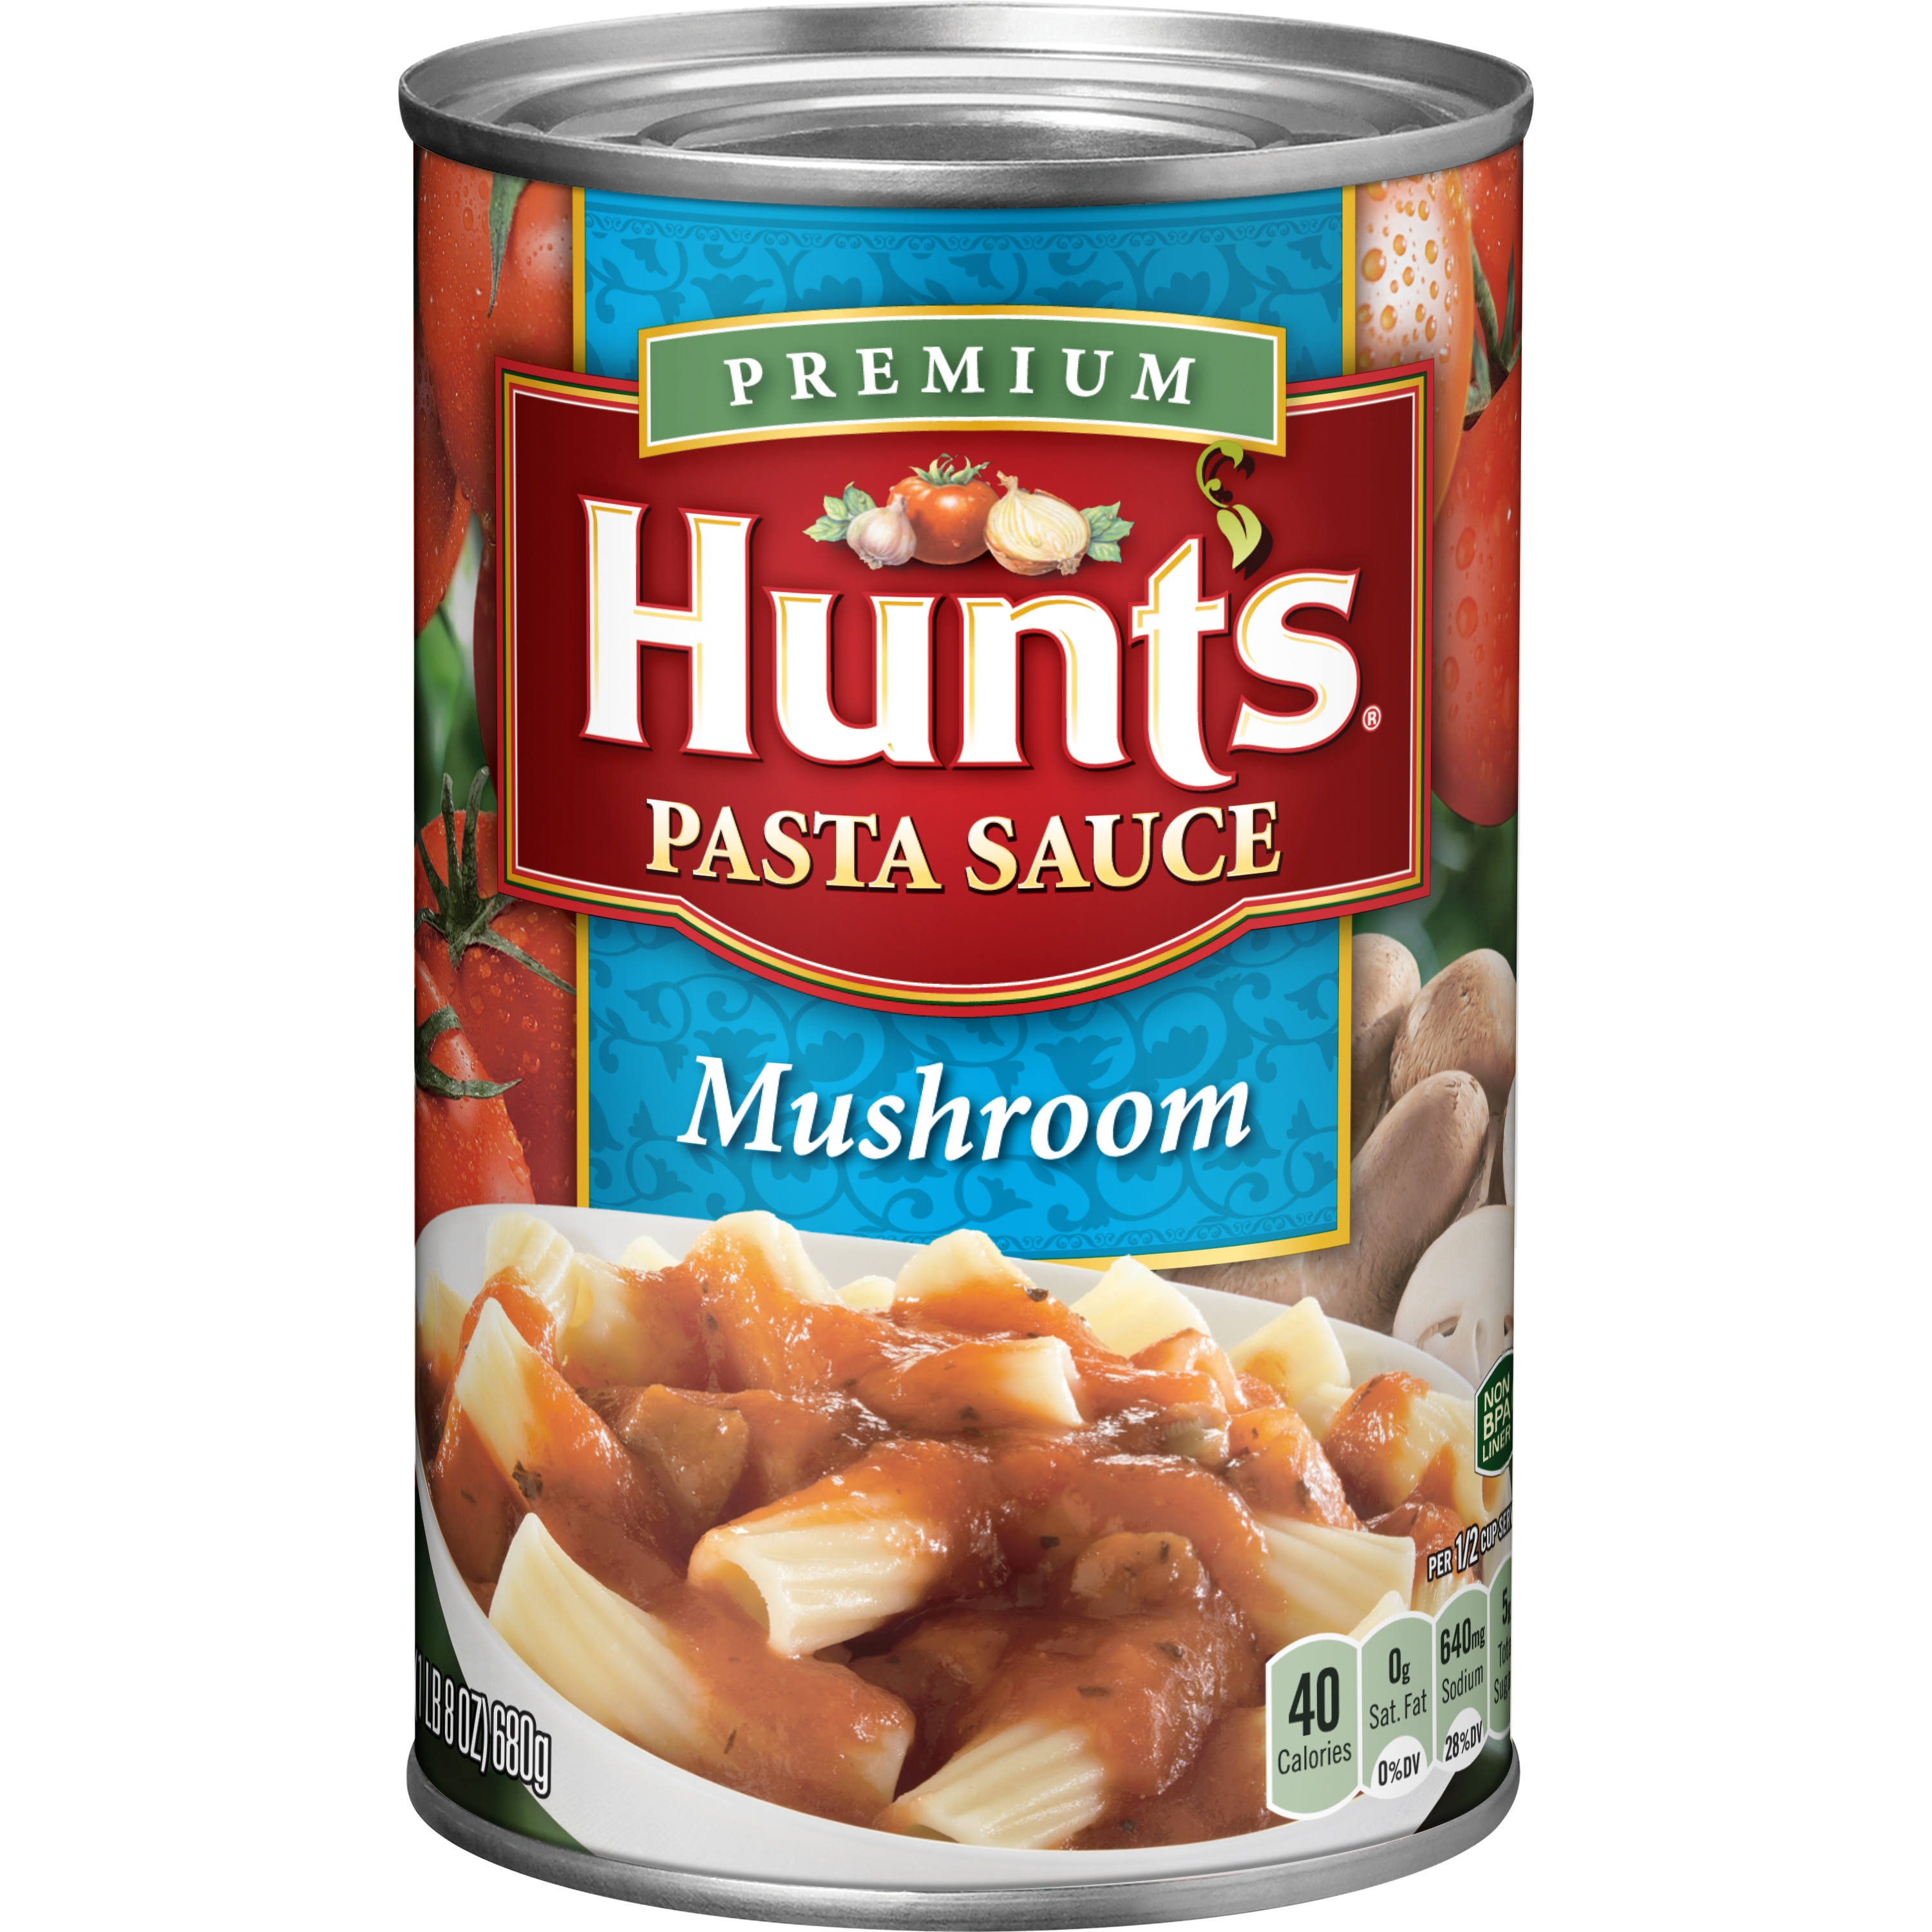 Hunts Premium Mushroom Pasta Sauce - 24oz